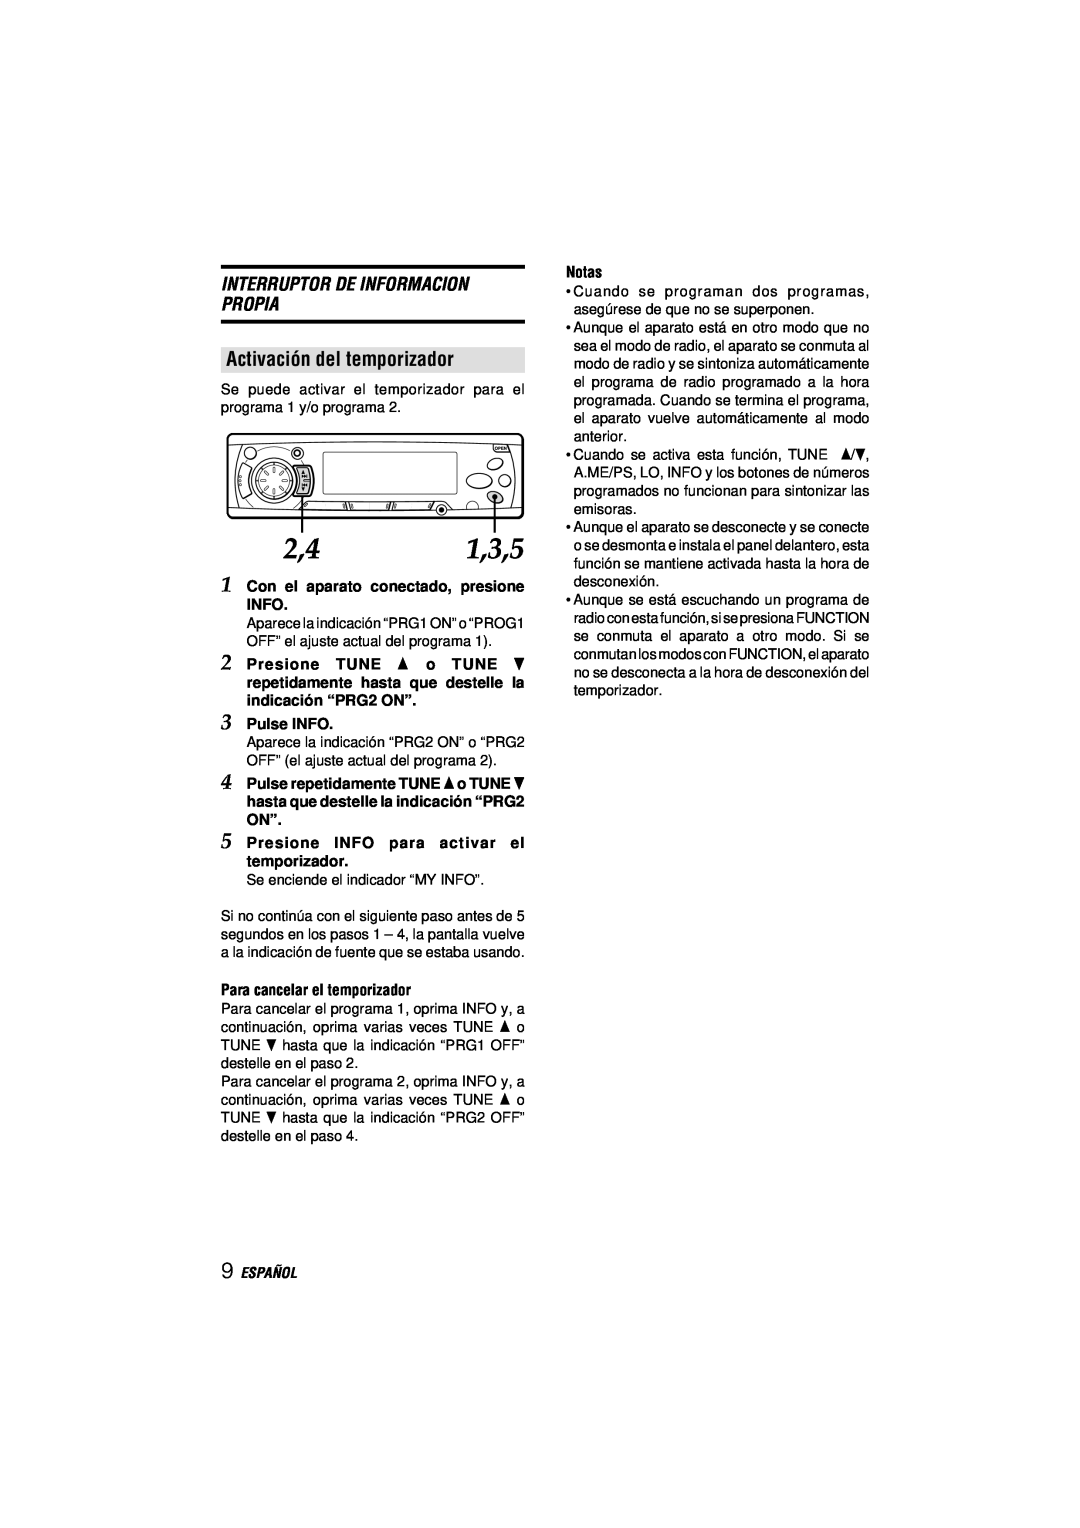 Aiwa CDC-MP3 manual Activación del temporizador, Interruptor De Informacion Propia, Español 